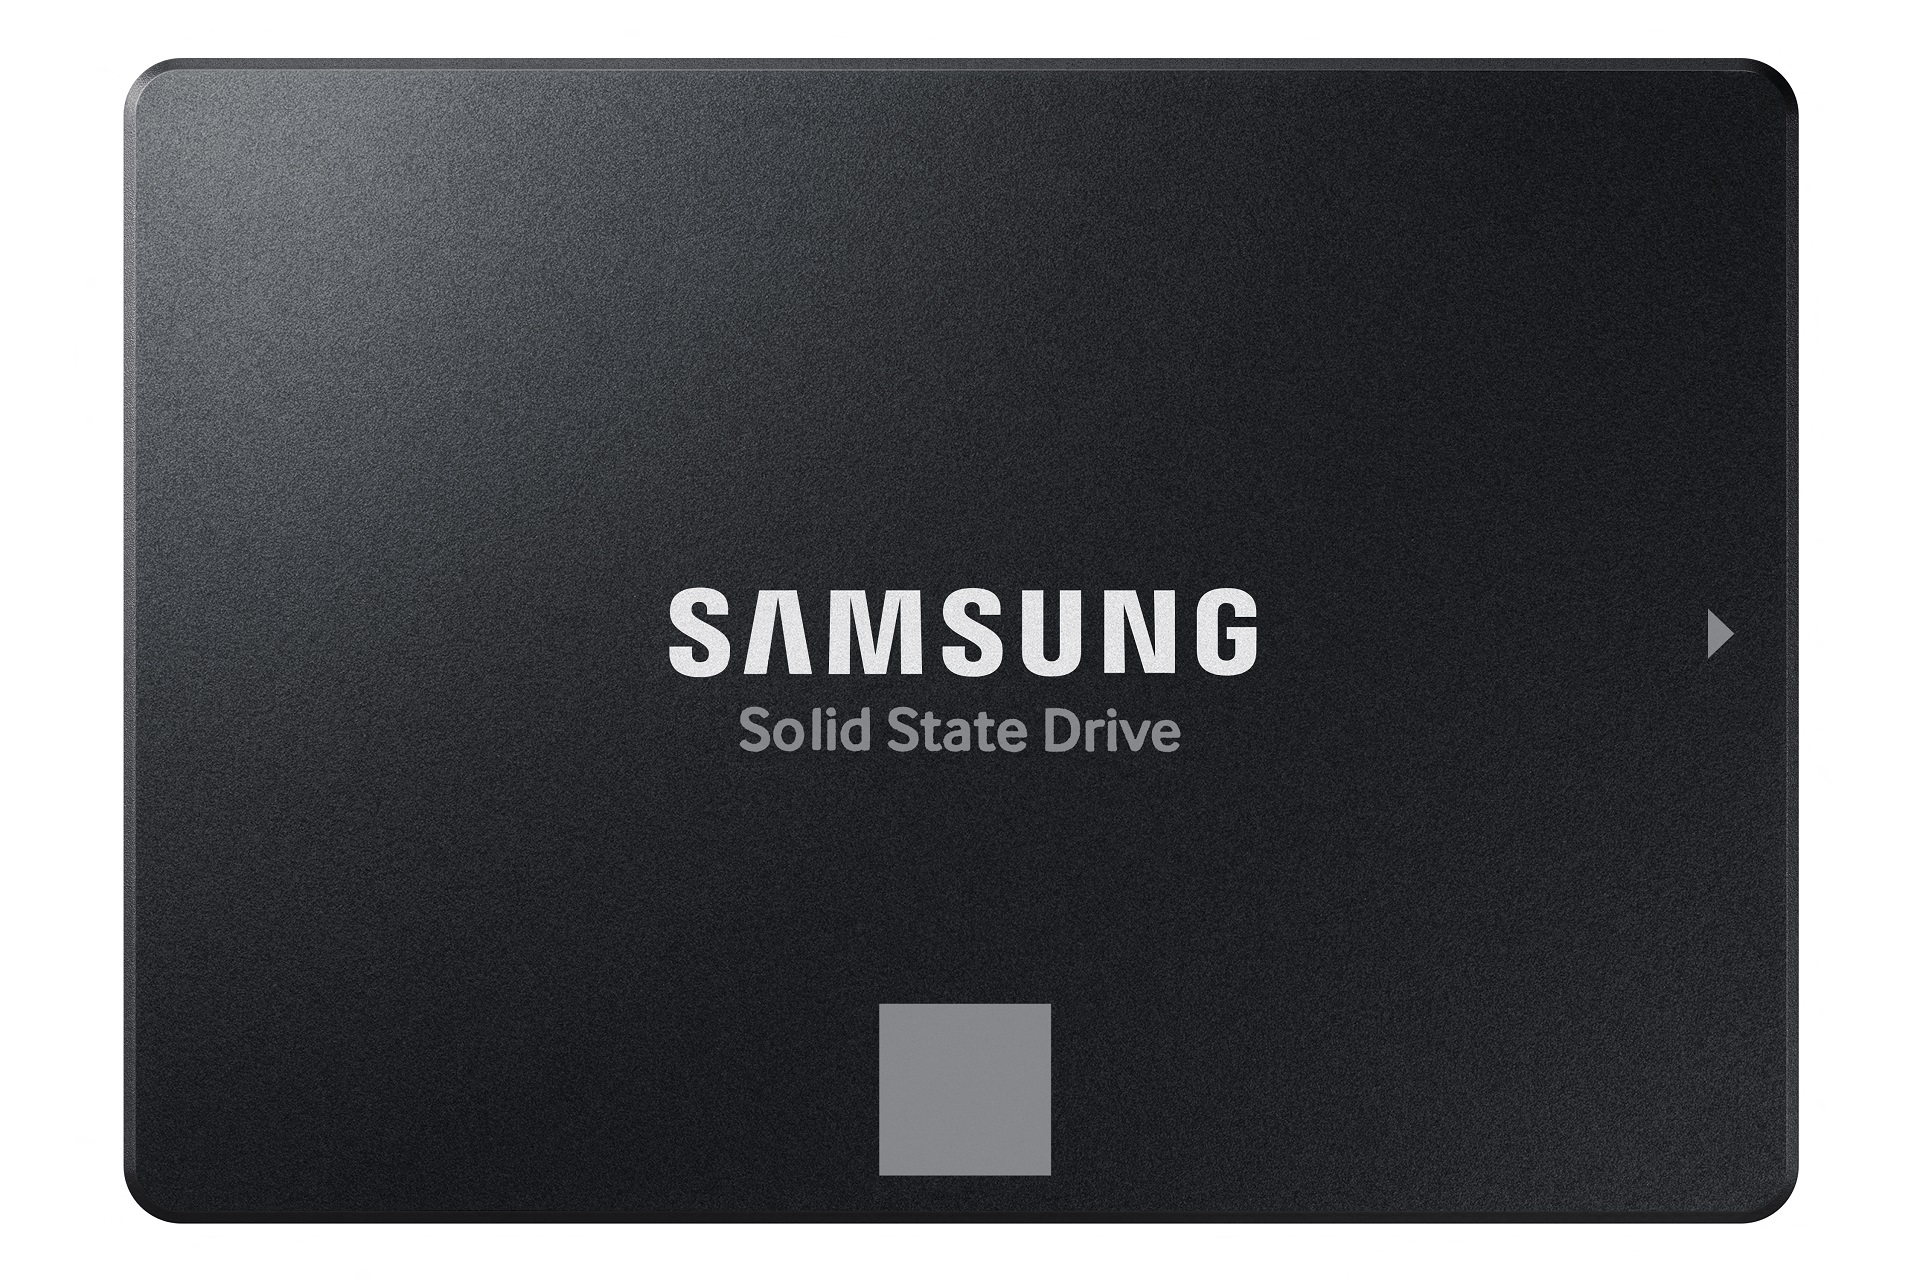 Immagine pubblicata in relazione al seguente contenuto: Samsung annuncia i drive SSD da 2.5-inch 870 EVO con interfaccia SATA 6Gbps | Nome immagine: news31573_Samsung-SSD-870-EVO_2.jpg